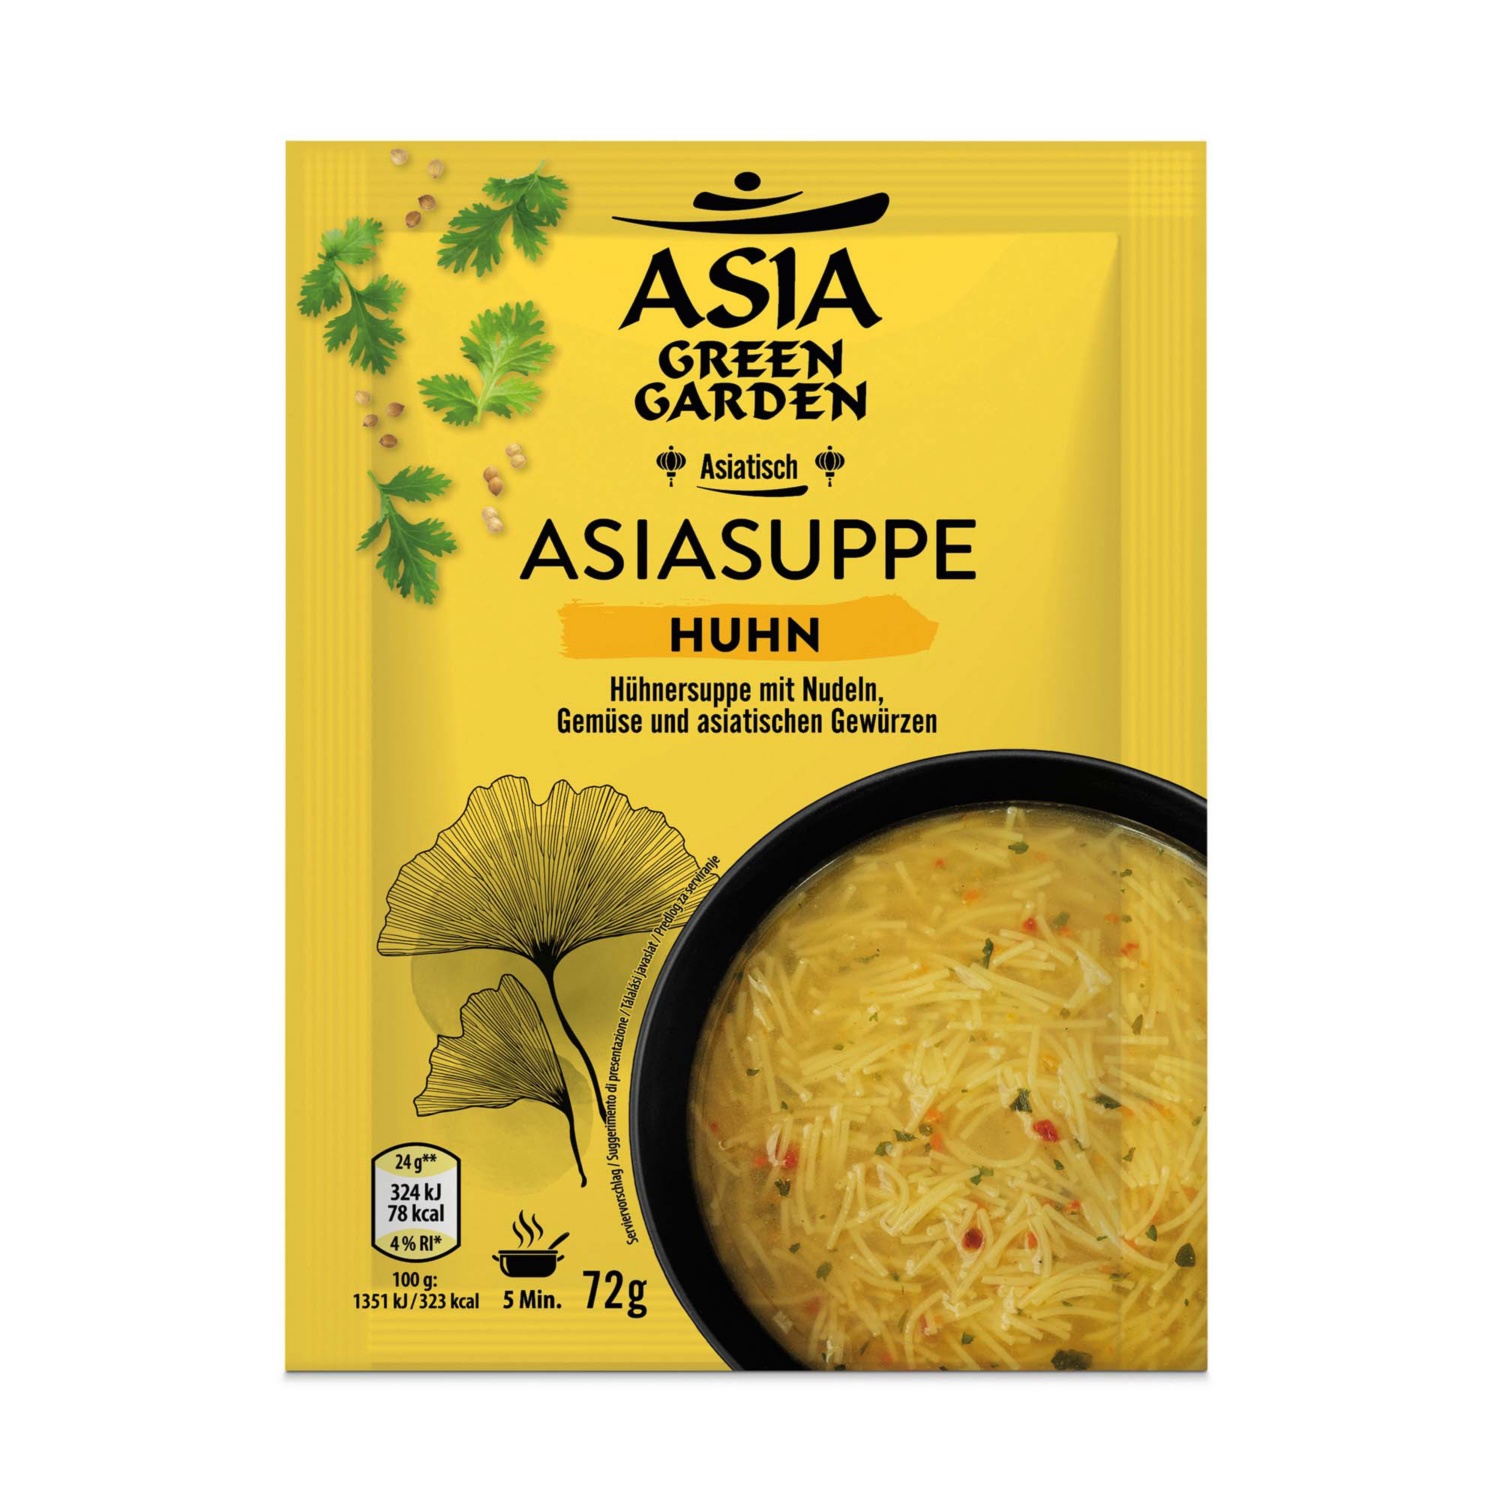 ASIA GREEN GARDEN Asia Suppen, Hühnersuppe